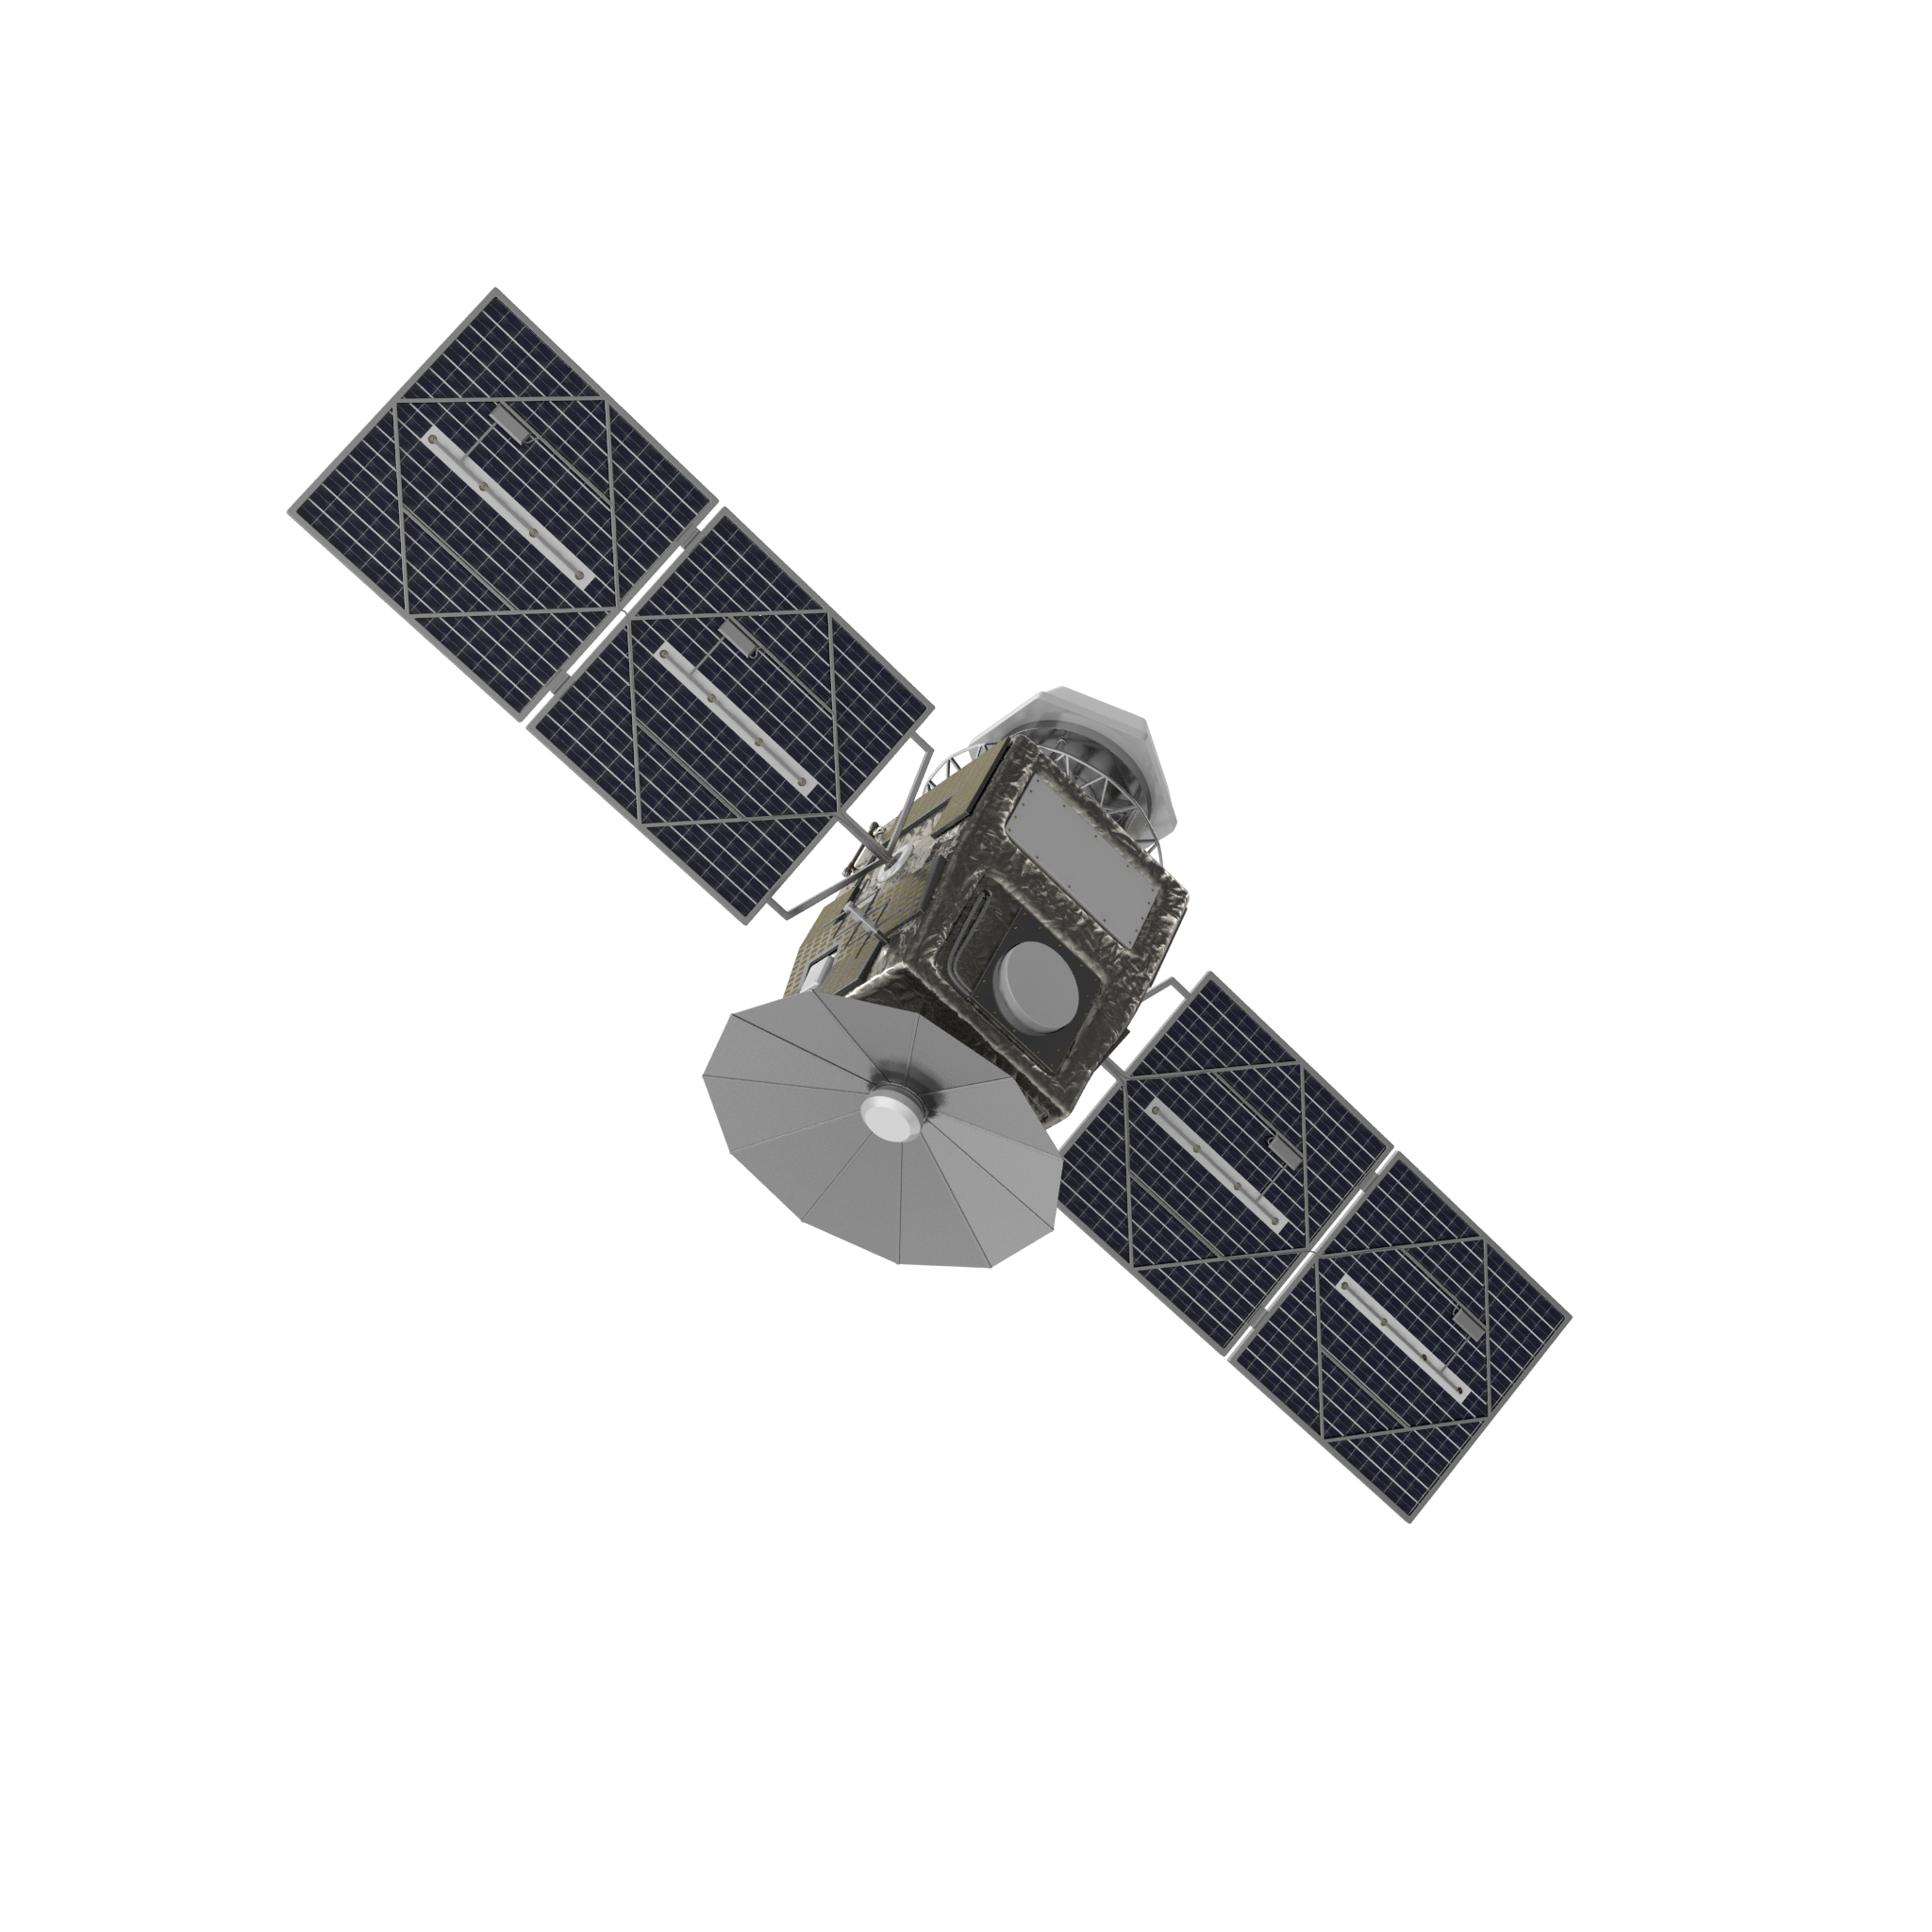 satelite